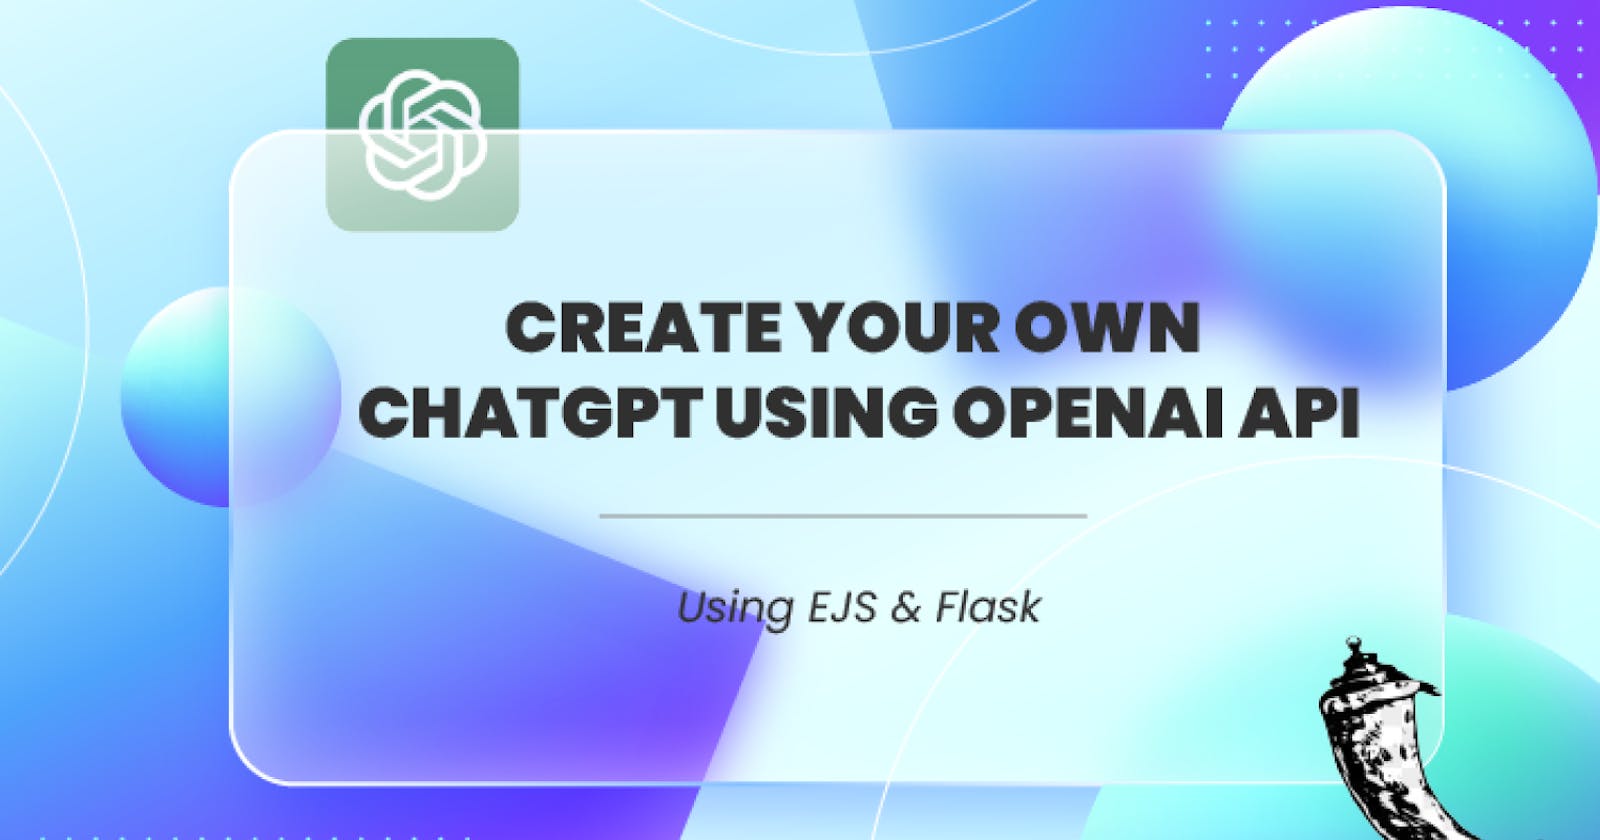 Make Your Own ChatGPT Using OpenAI API